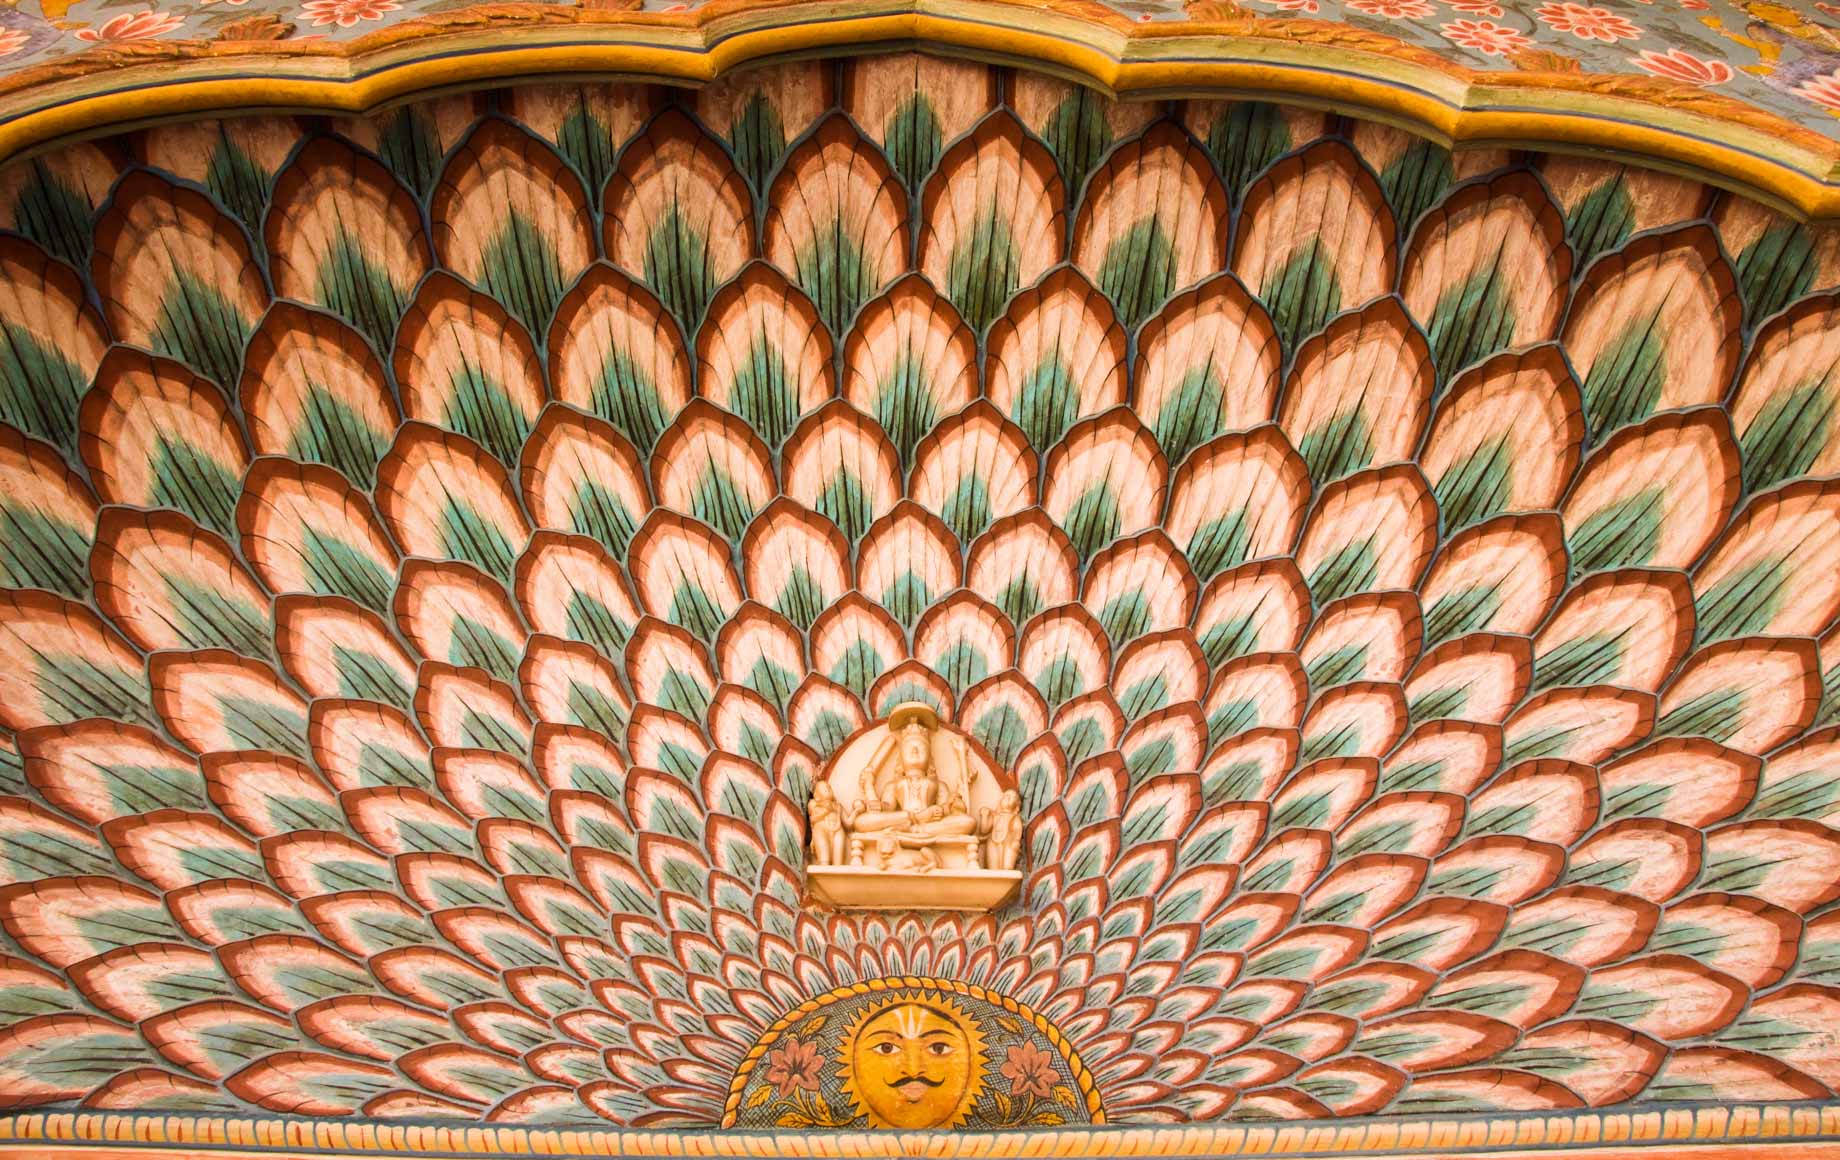 Patterns of Jaipur Buildings